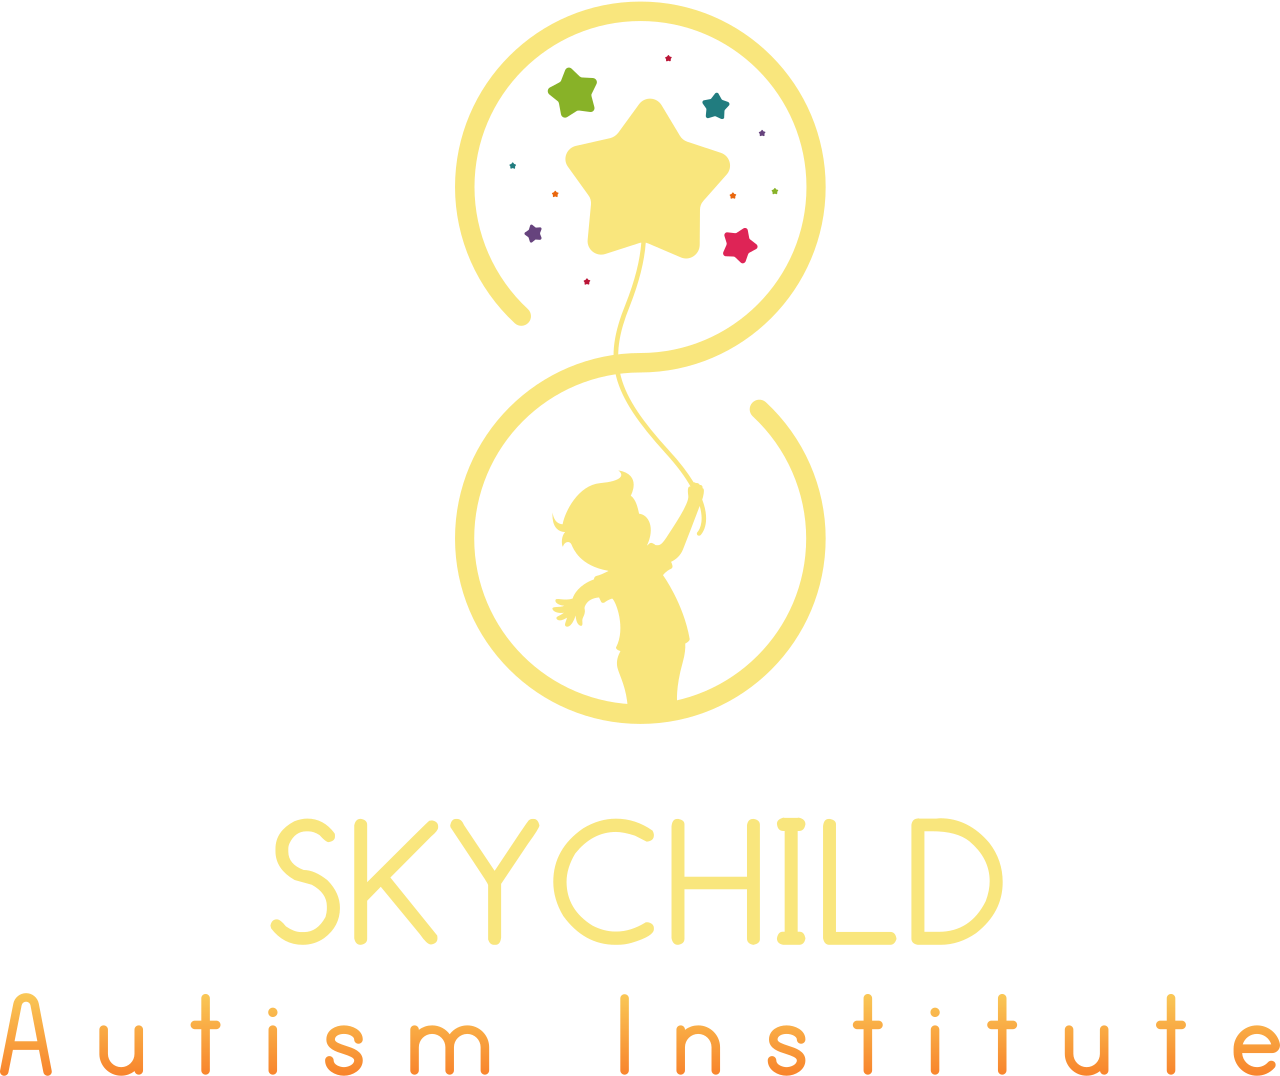 SKYCHILD's web page